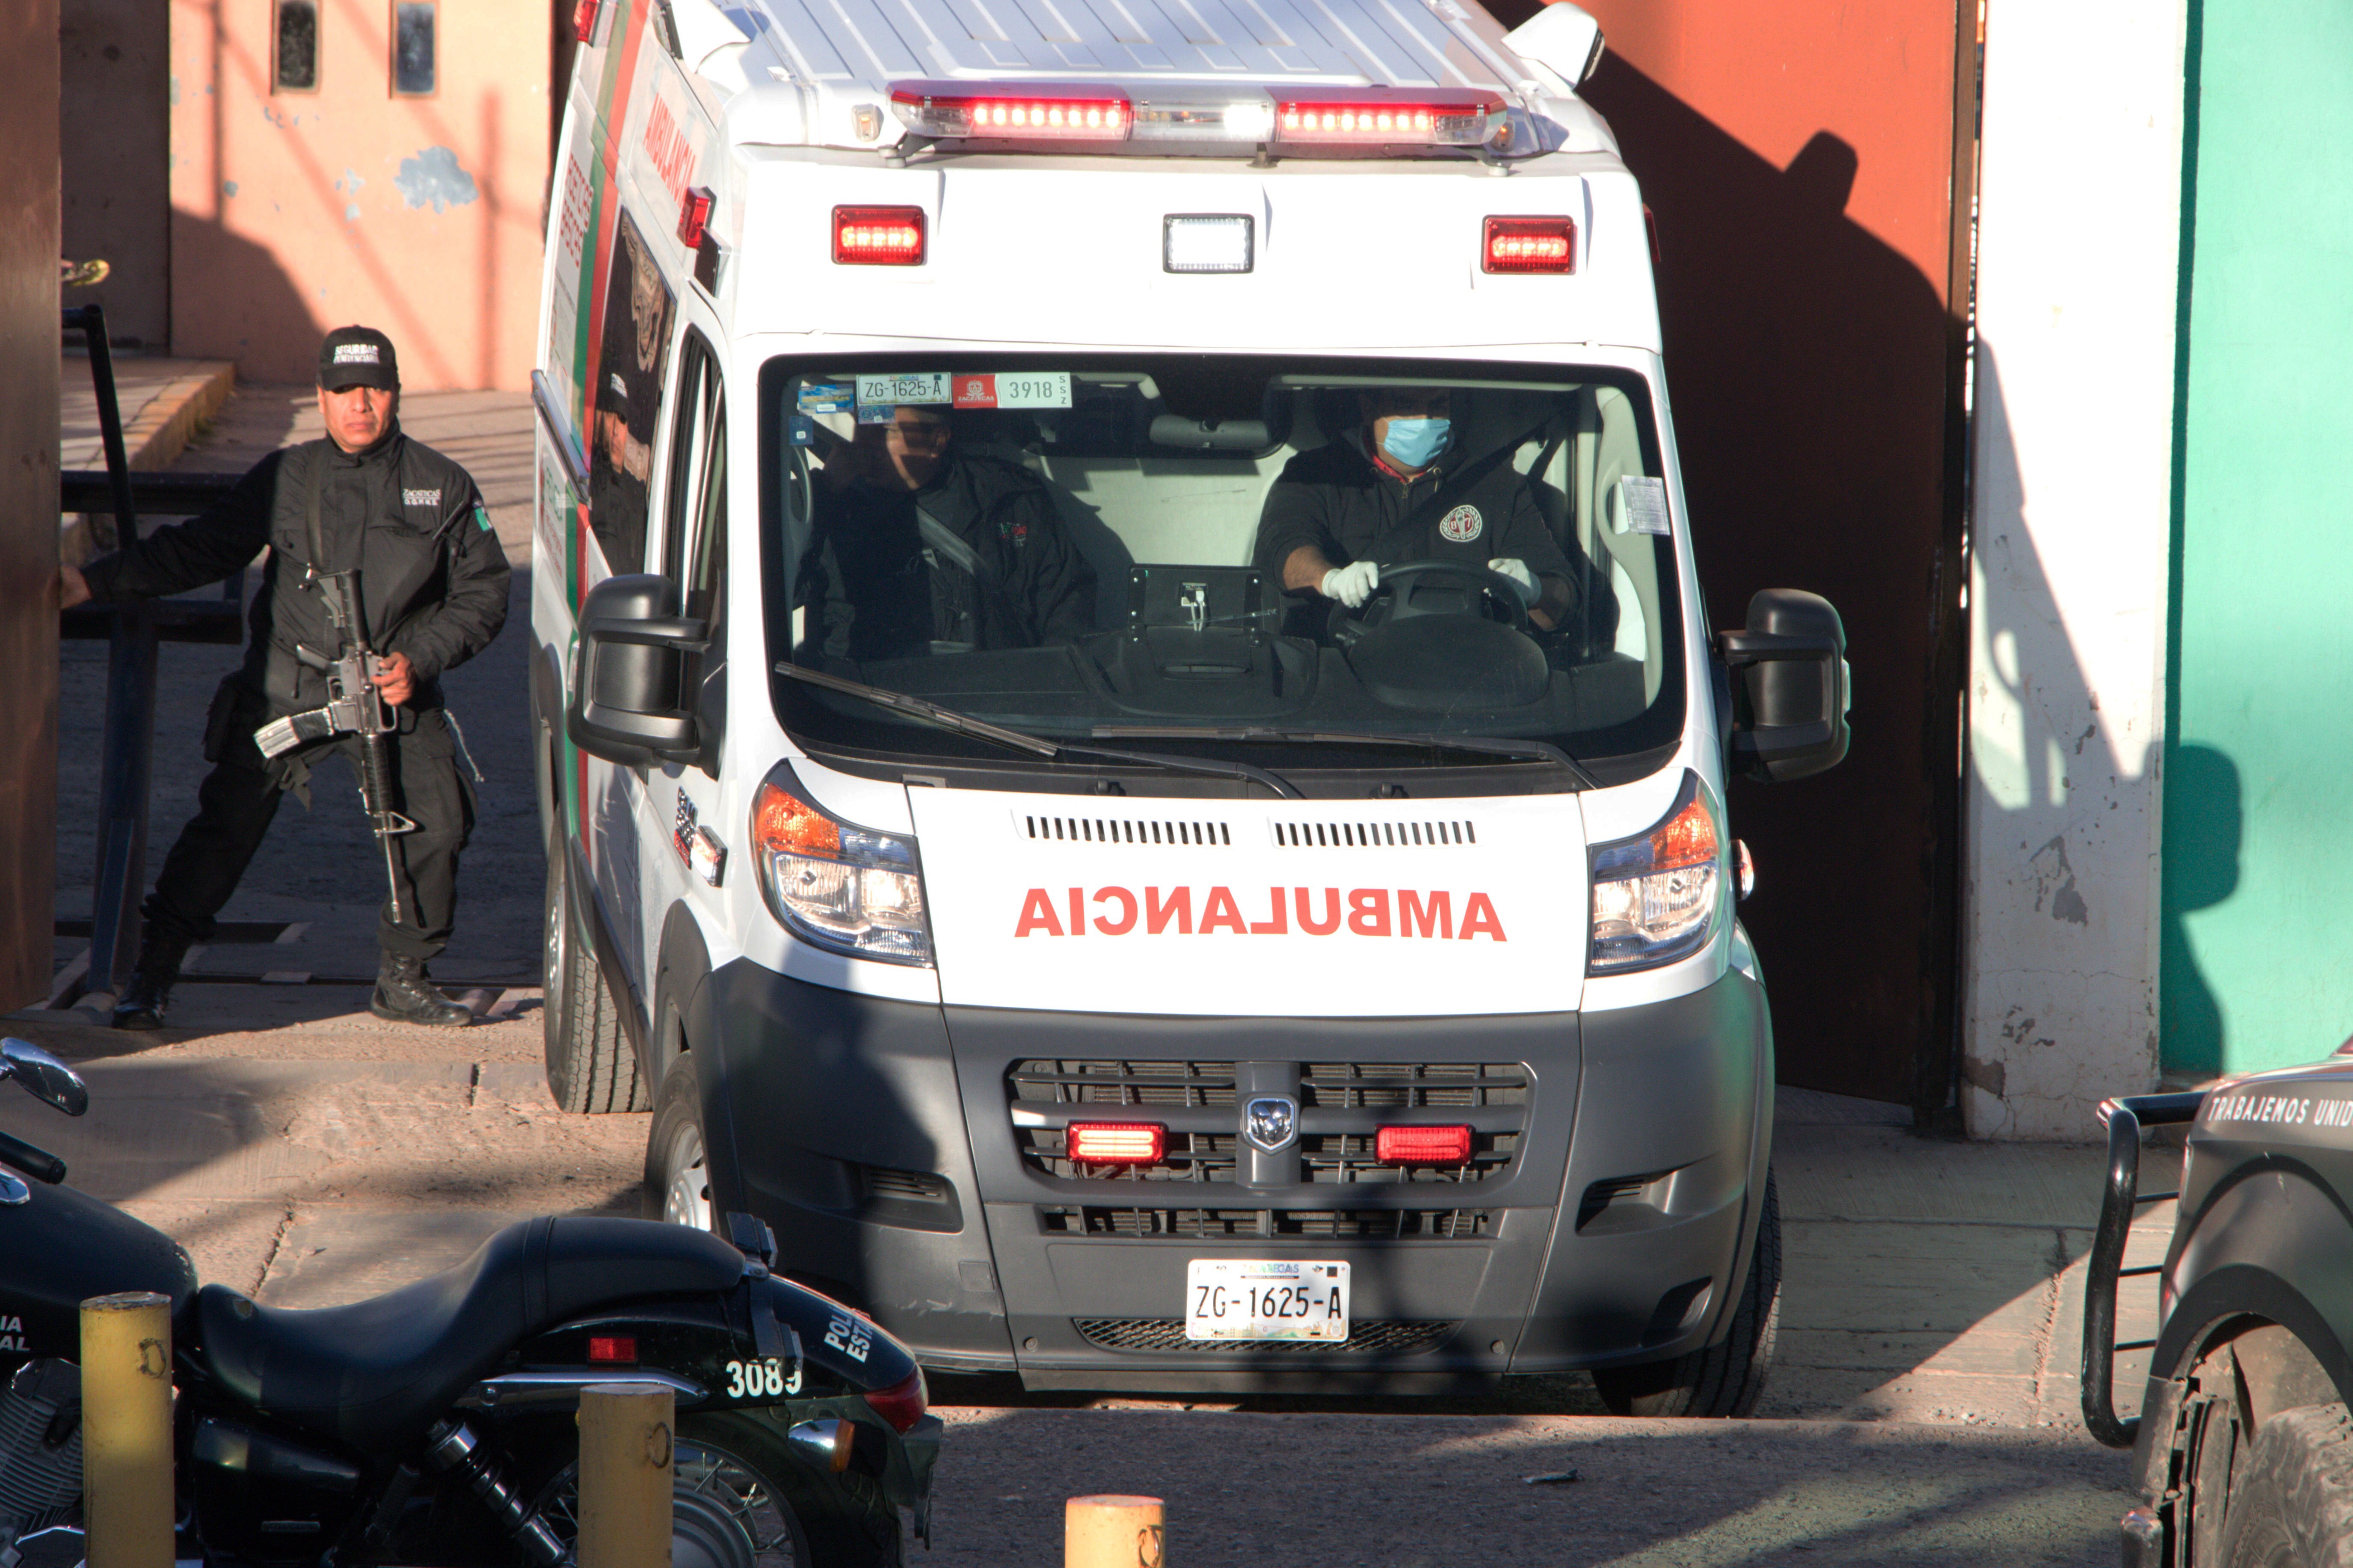 Abandonan camioneta con seis cuerpos en plaza de ciudad mexicana de Zacatecas